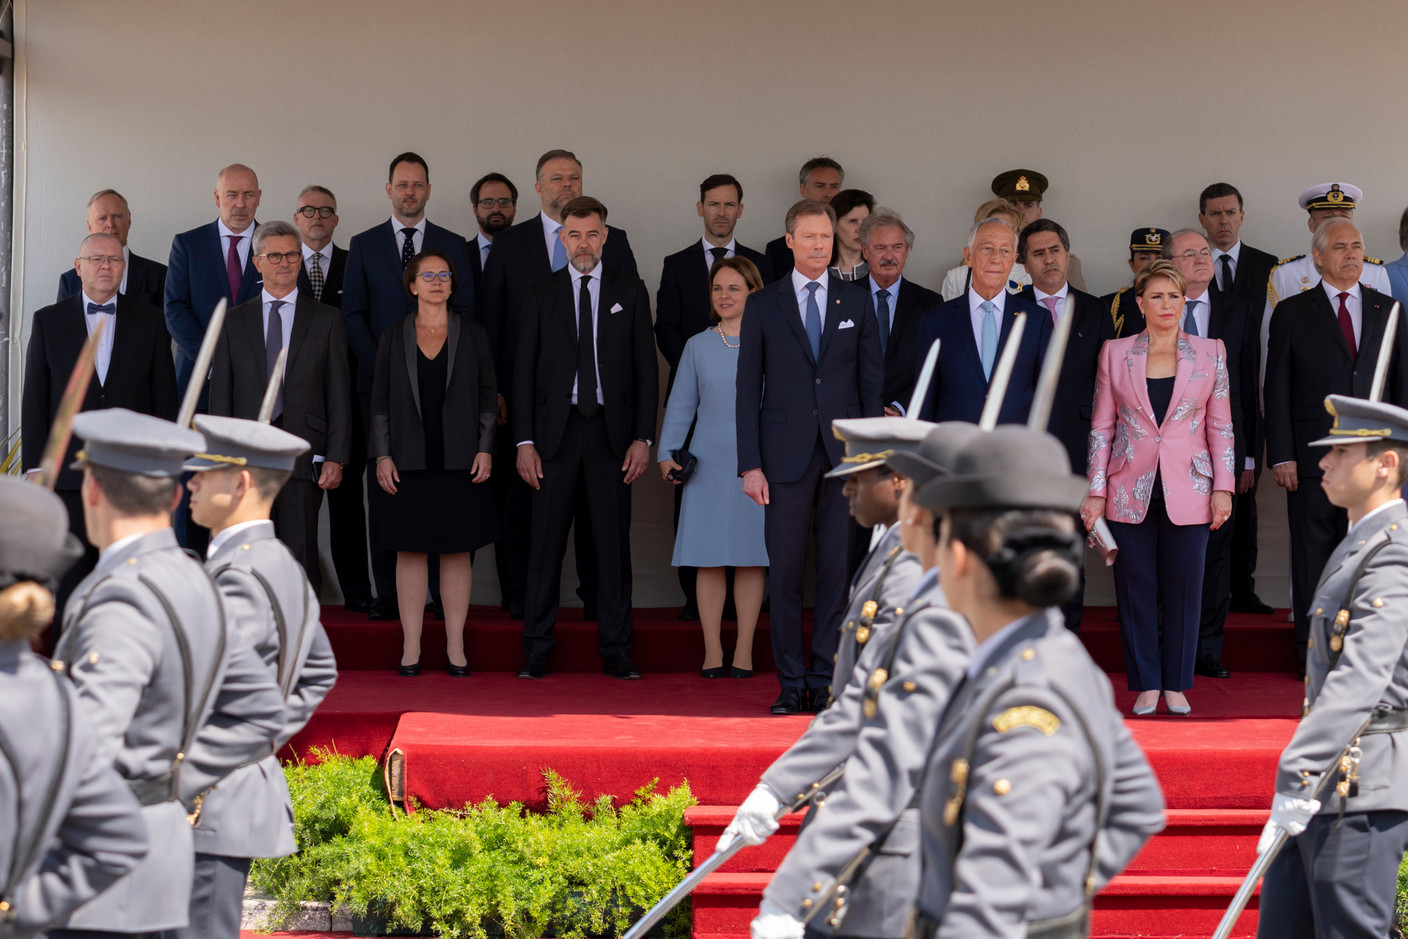 Le couple grand-ducal a assisté à la parade aux côtés de membres du gouvernement et du président du Portugal. (Photo: SIP/ Emmanuel Claude)